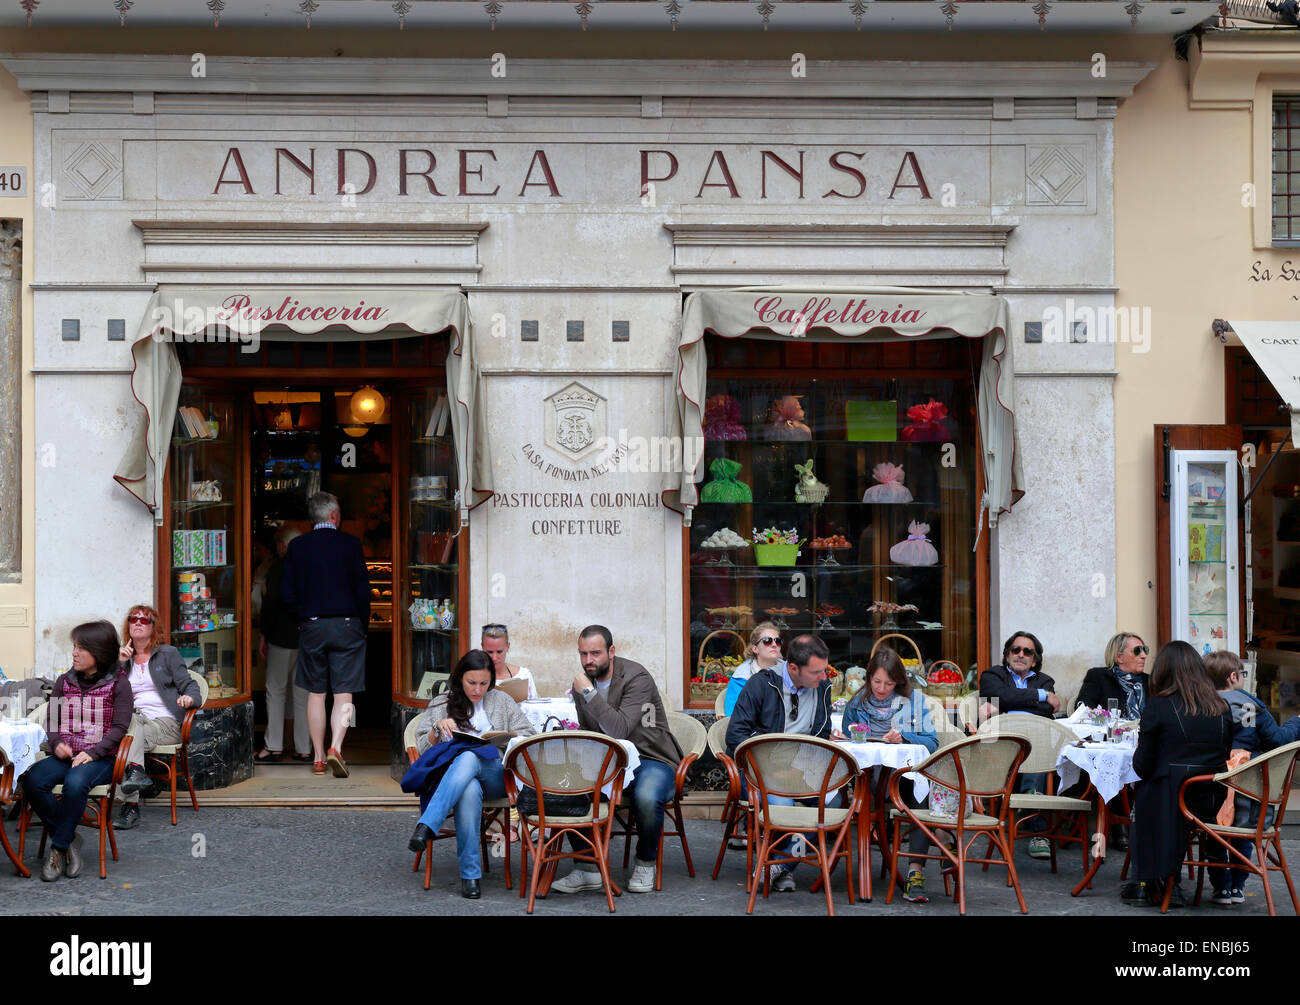 Andrea pansa Banque de photographies et d'images à haute résolution - Alamy